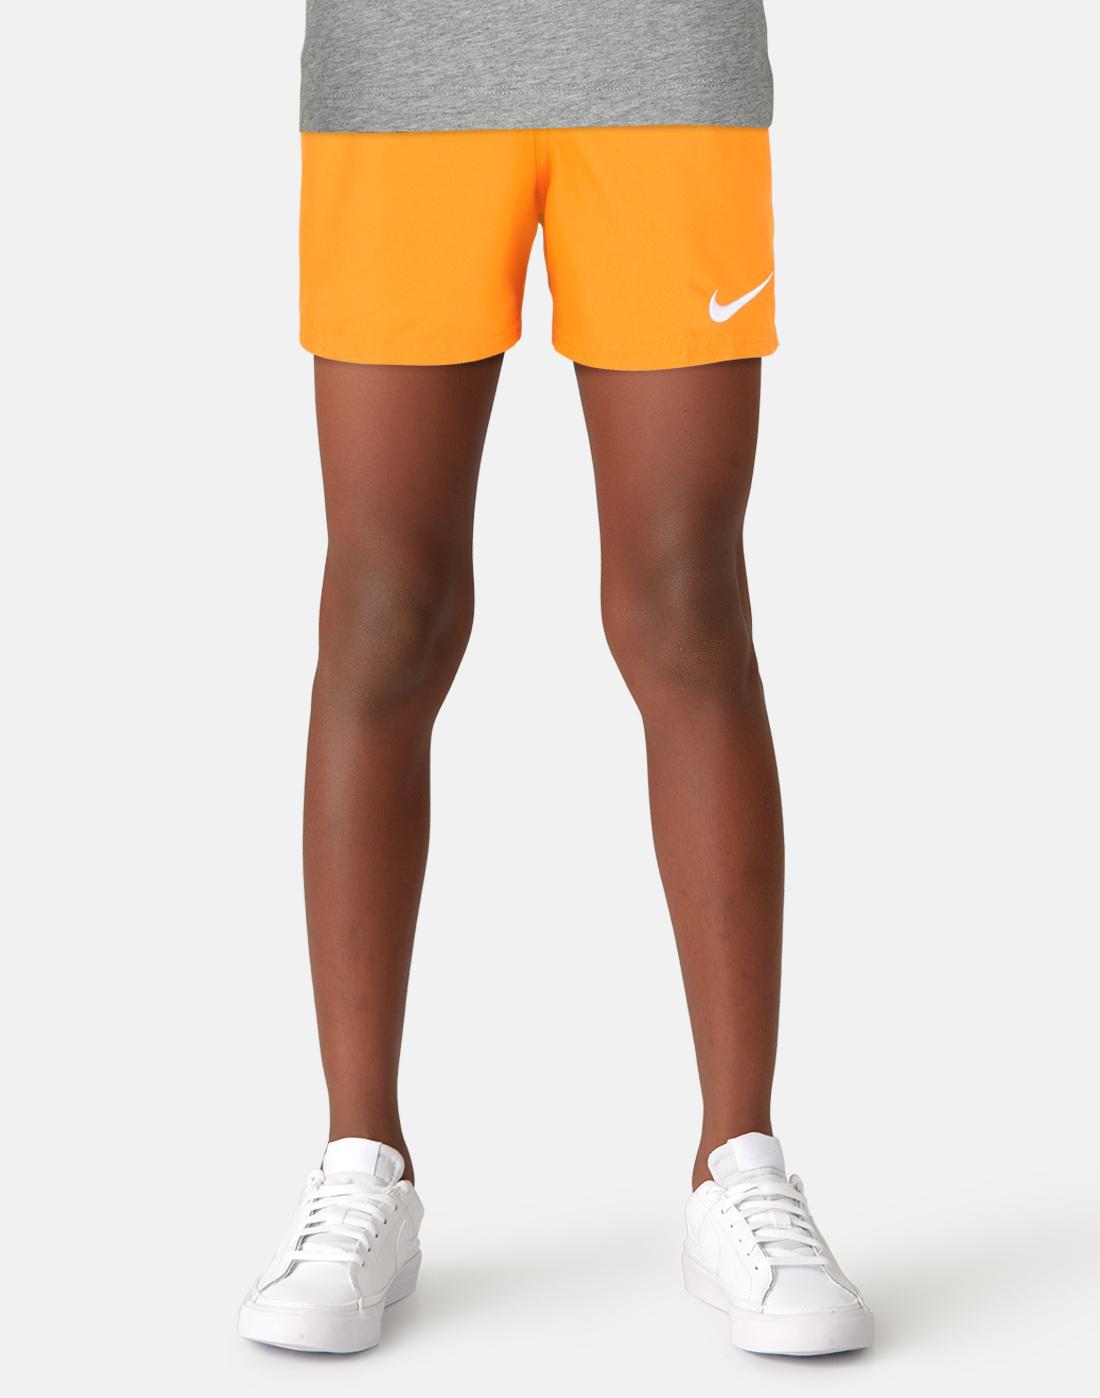 nike orange swim shorts